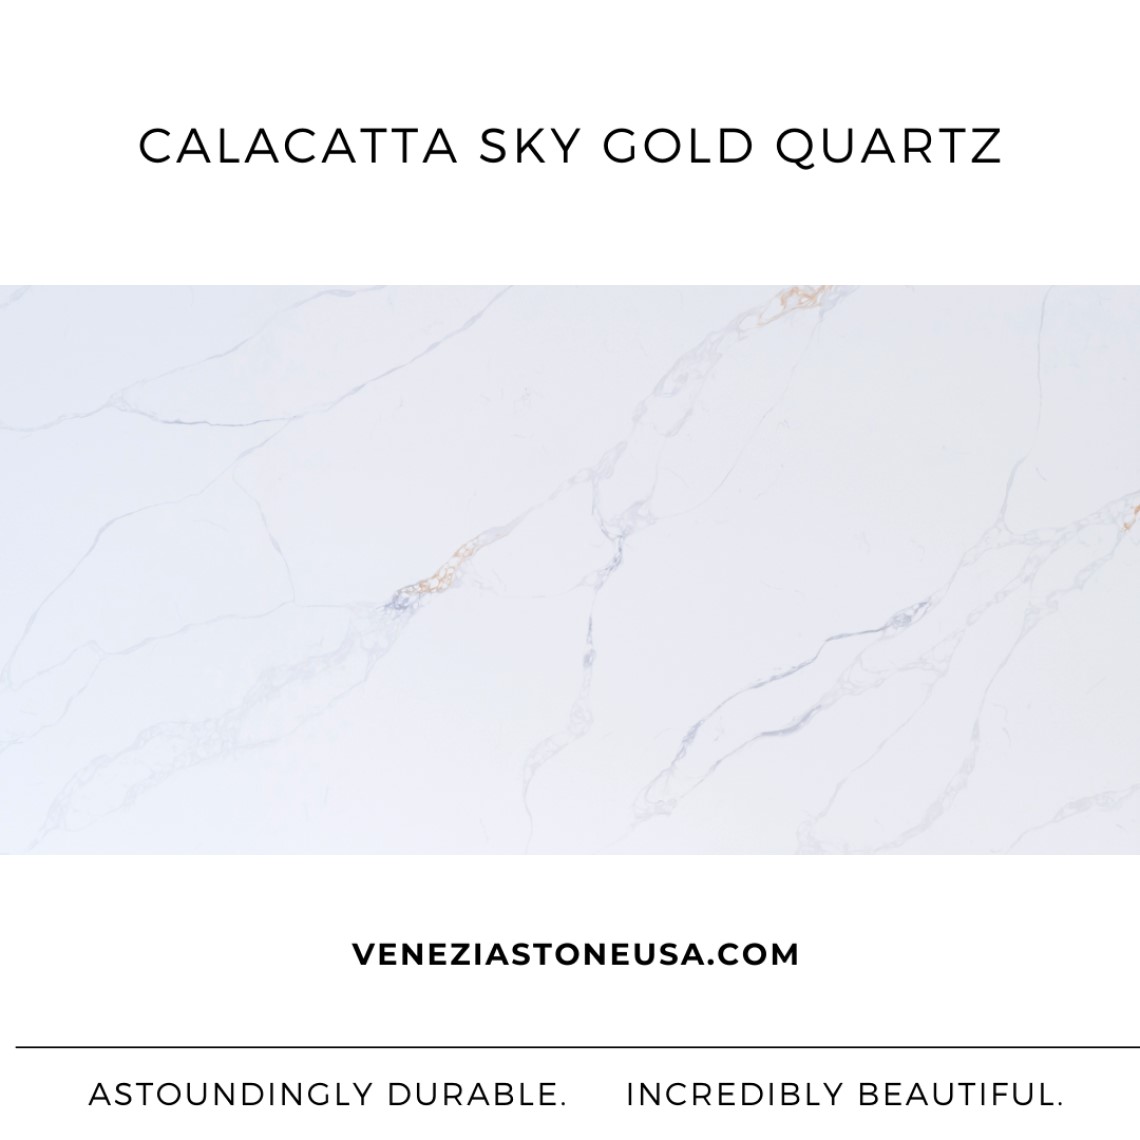 Calacatta Sky Gold Quartz